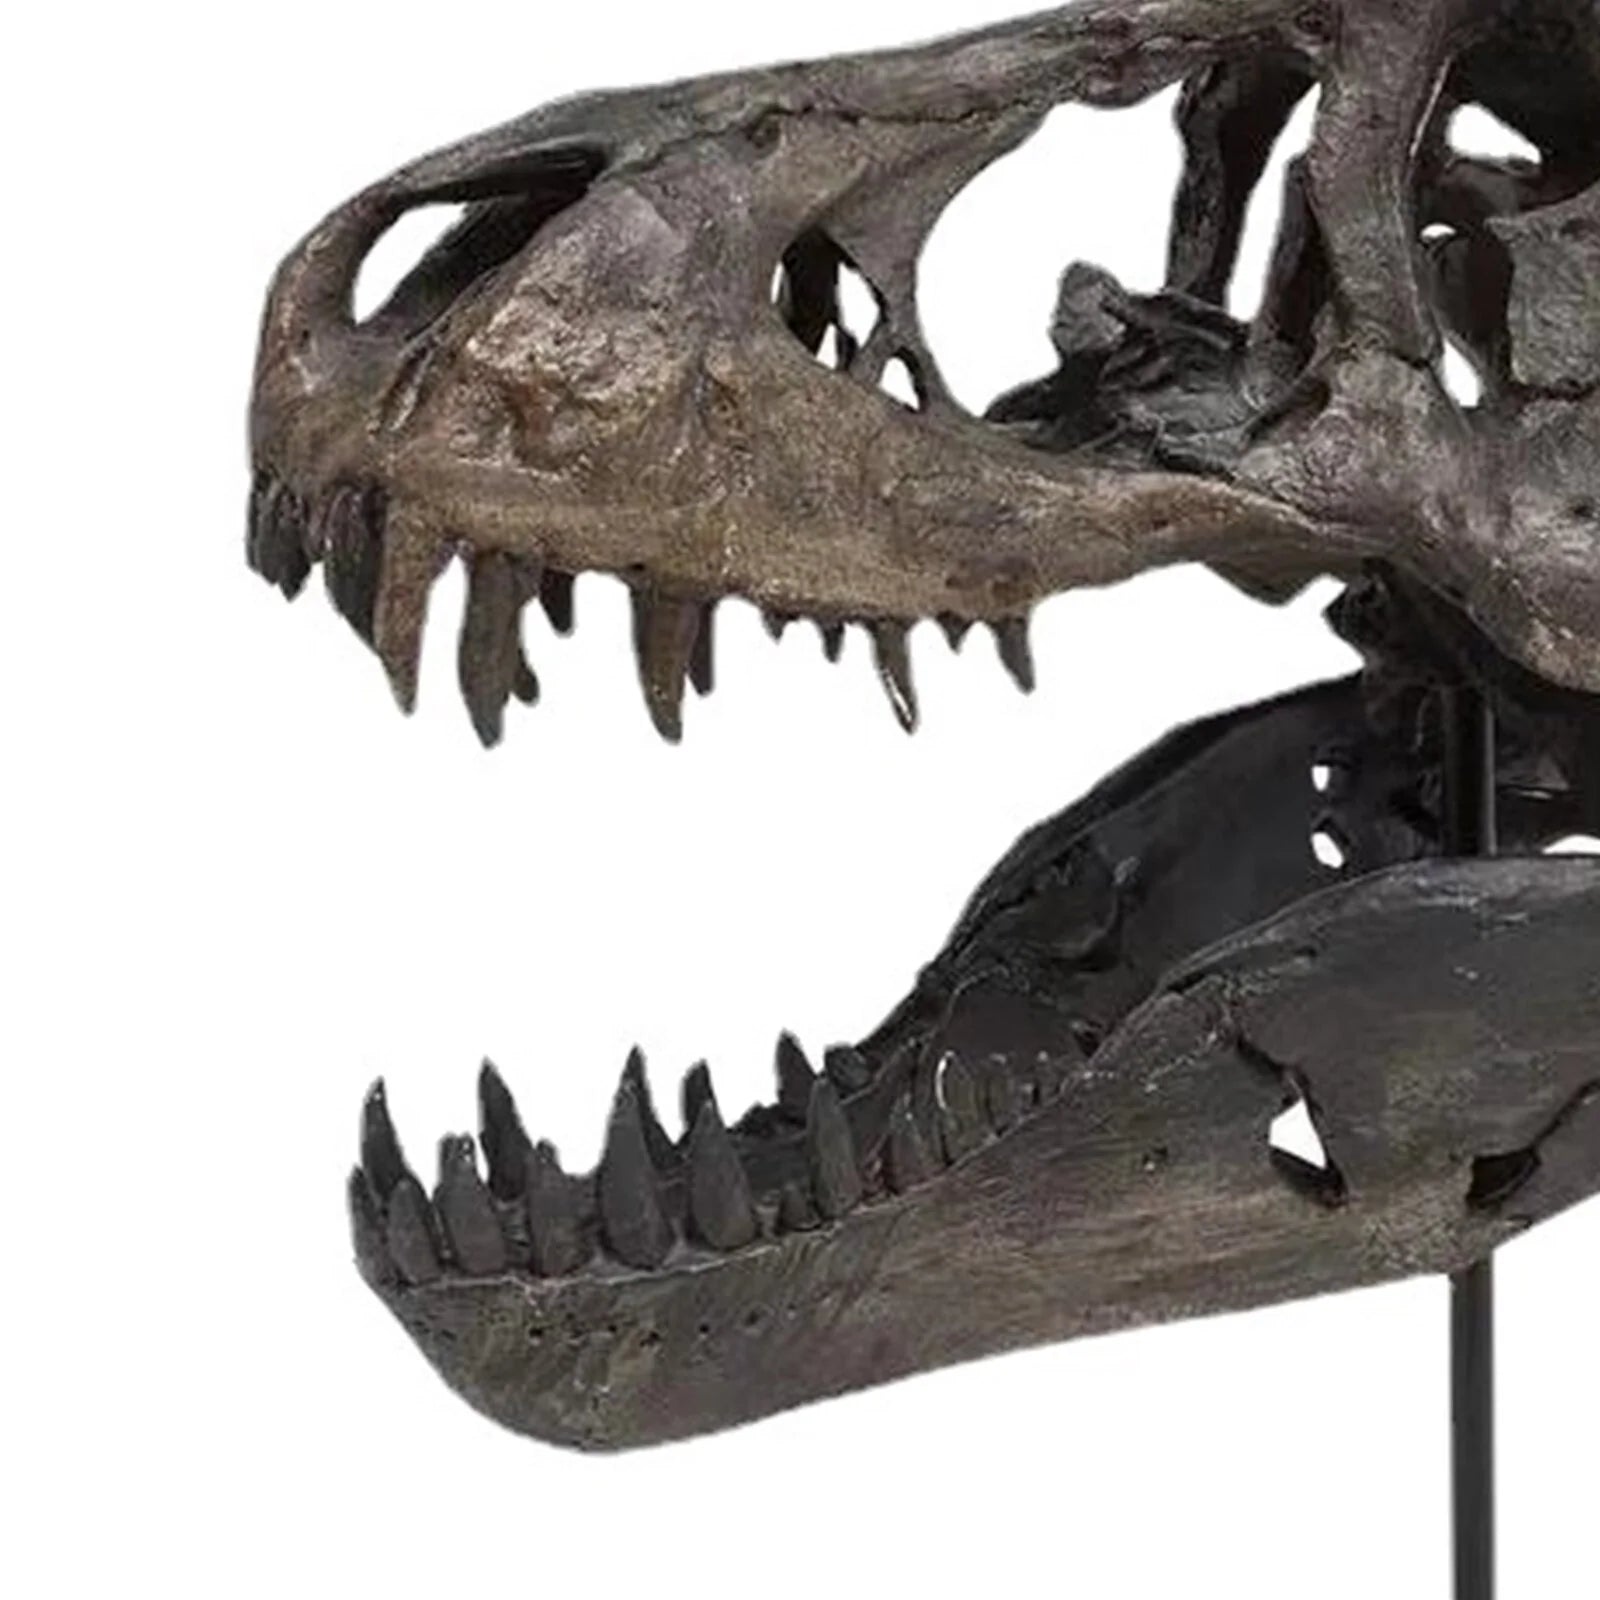 The T-Rex Skull Skeleton